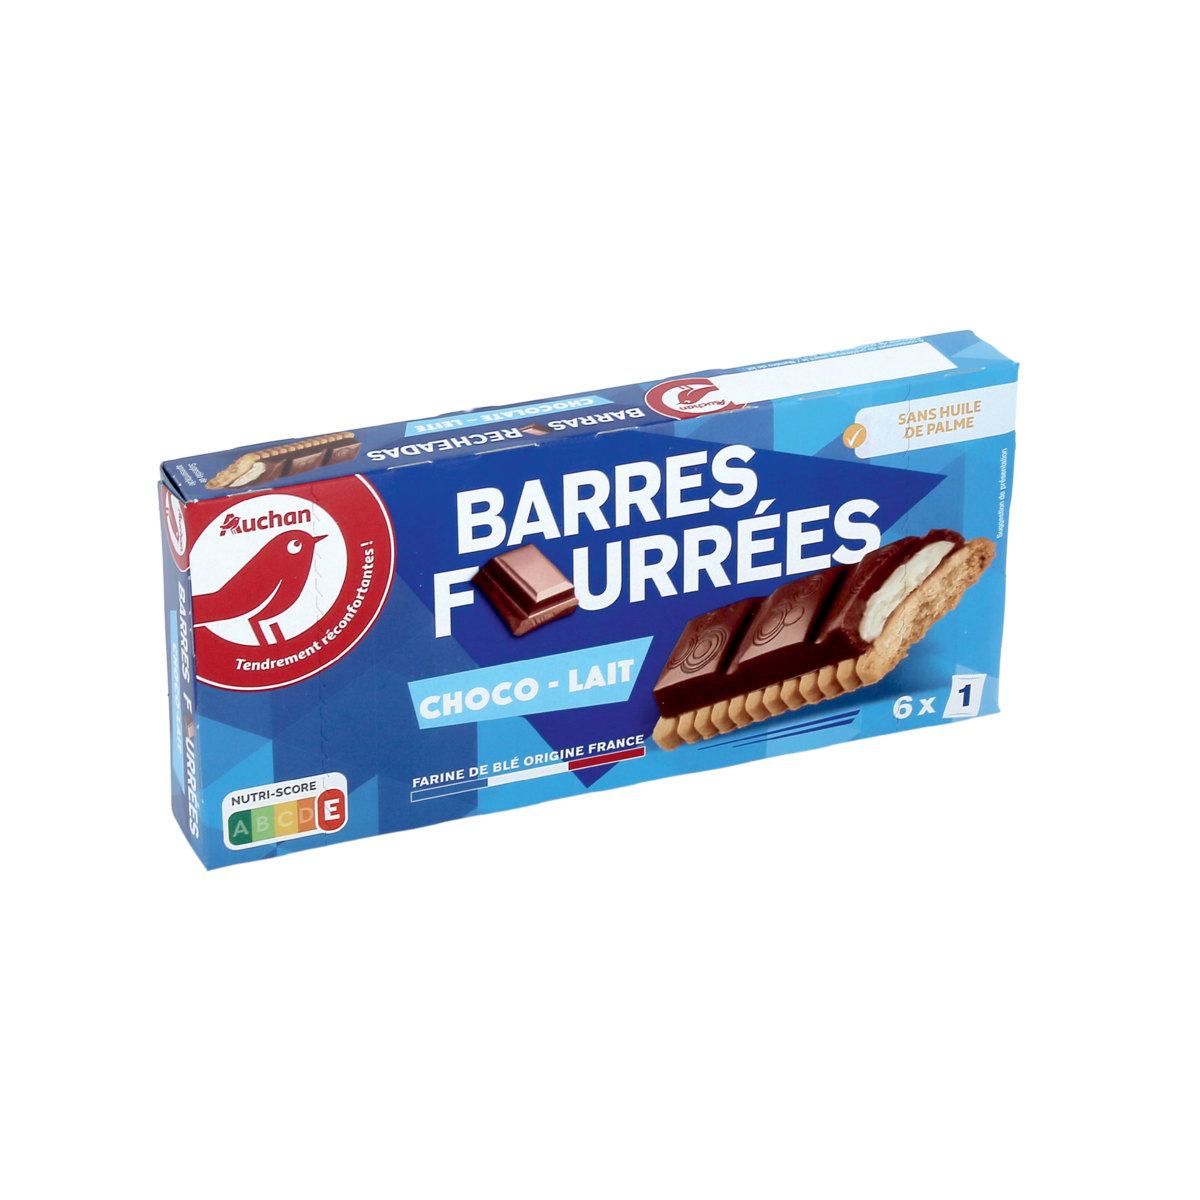 BARRES FOURRÉES CHOCO - LAIT AUCHAN